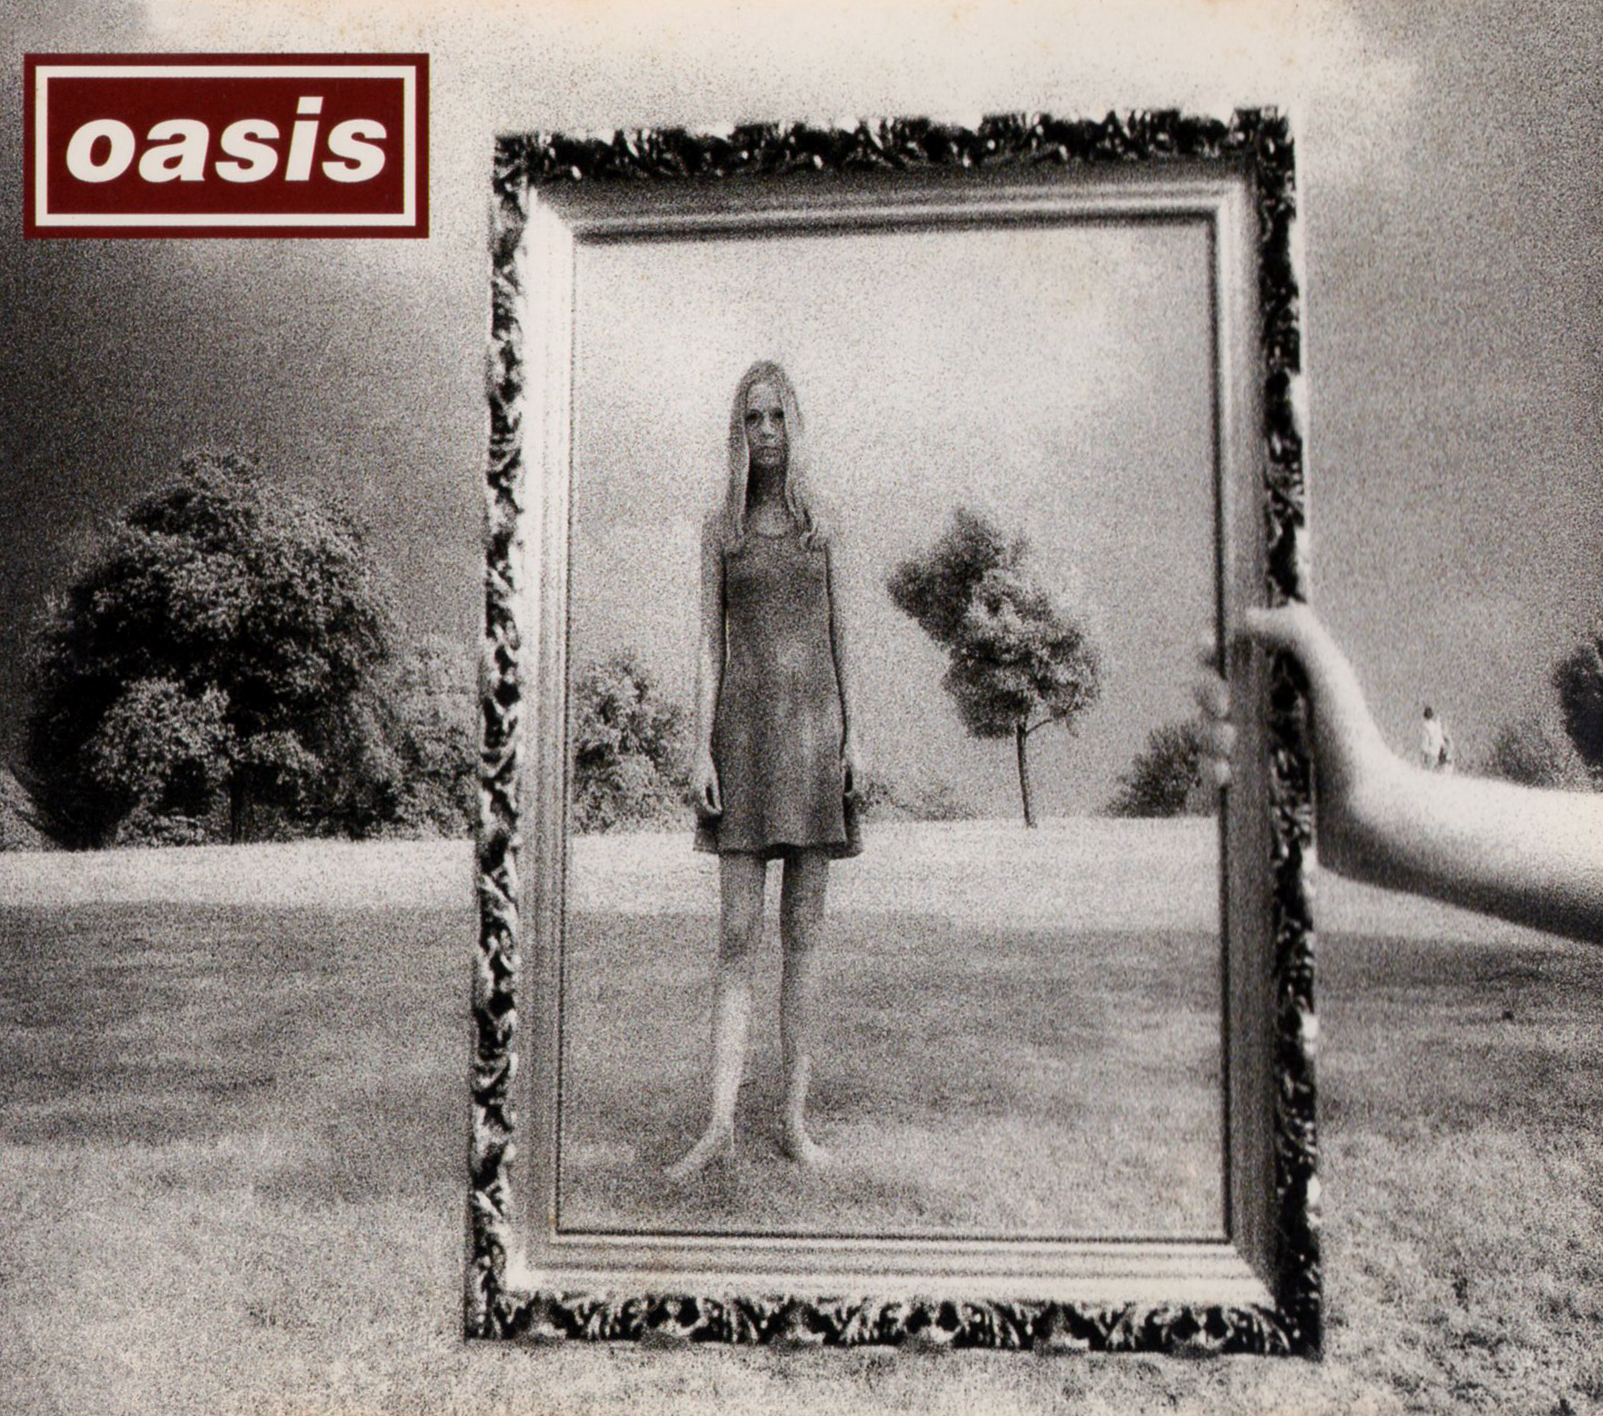 oasis (オアシス) 8thシングル『Wonderwall (ワンダーウォール)』(1995年11月23日発売) 高画質CDジャケット画像